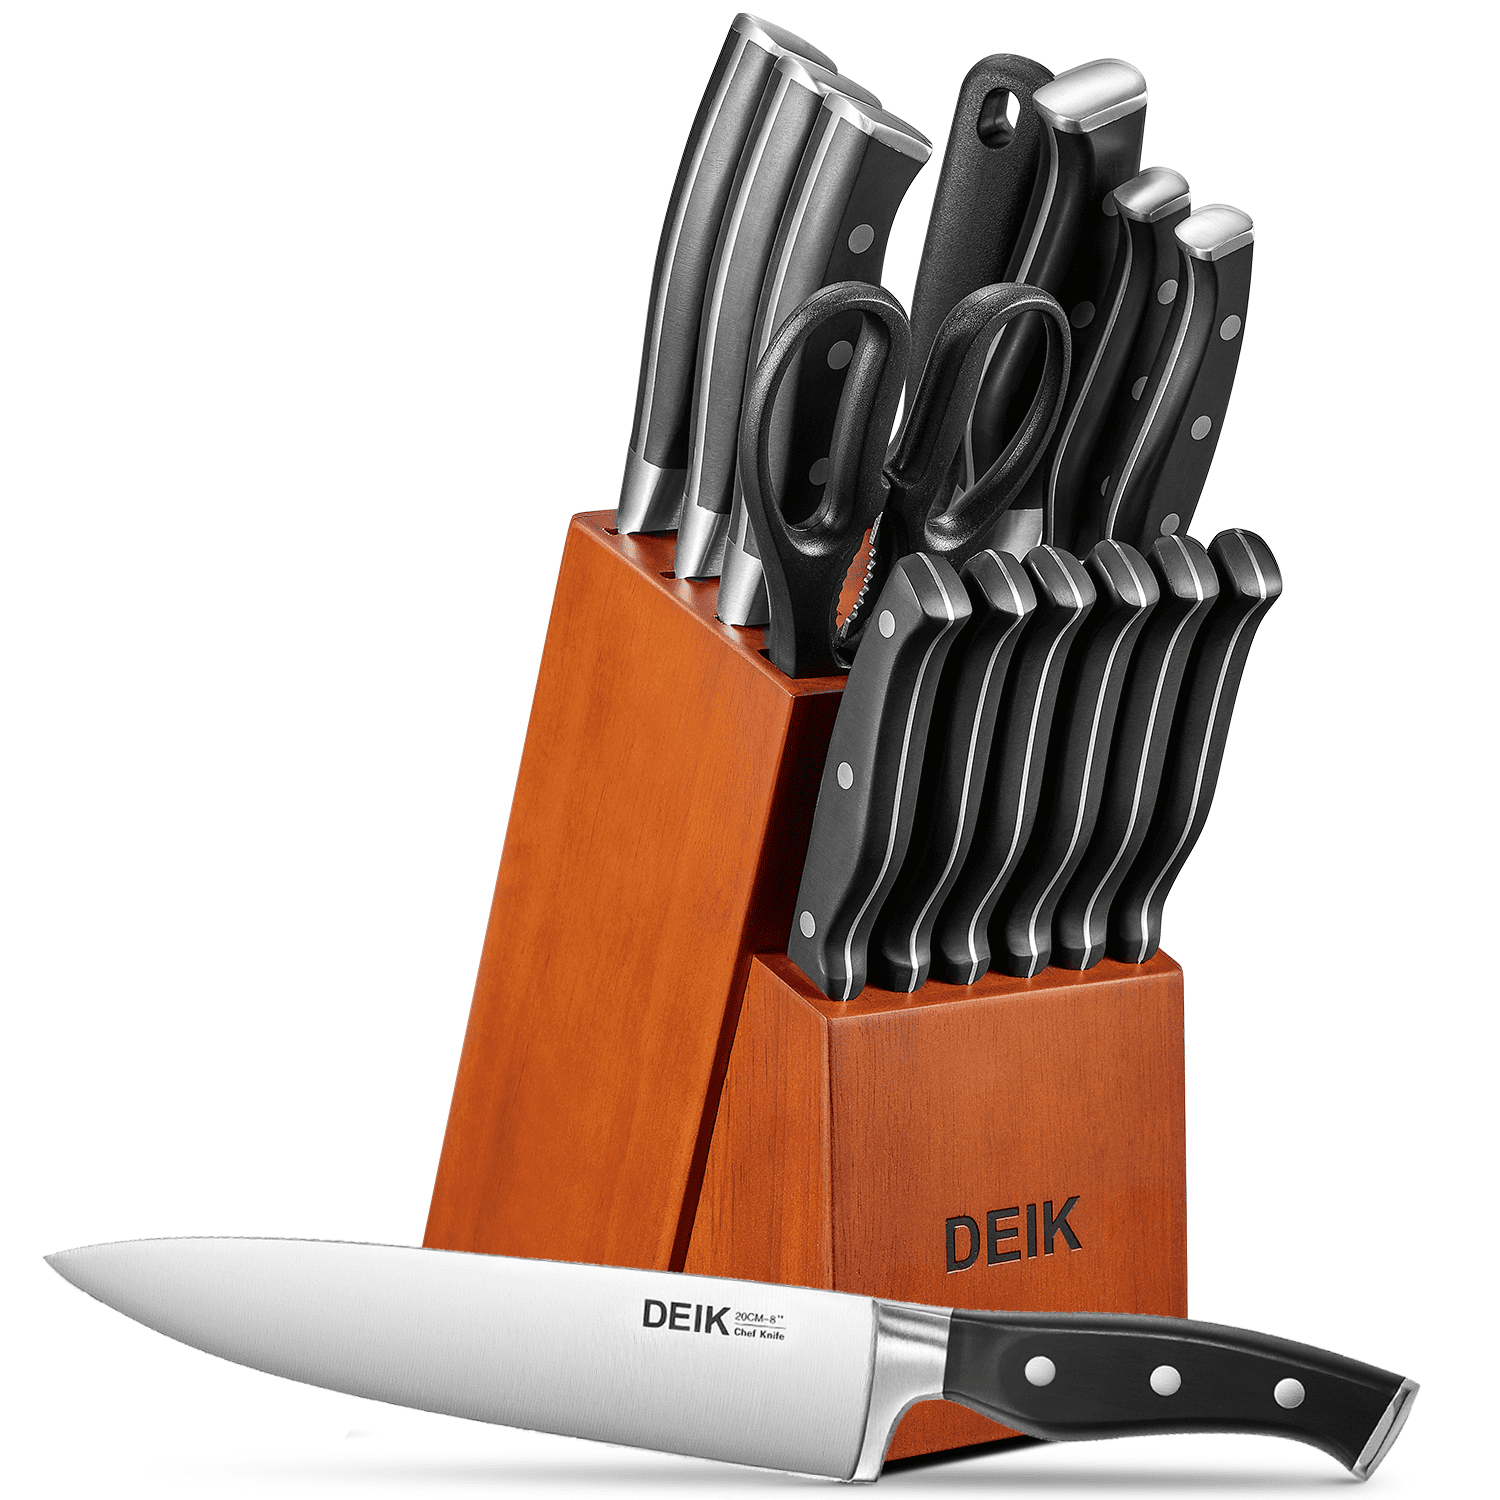 WIZEKA Kitchen Knife Set with Block NSF Certified 15pcs German Steel, New